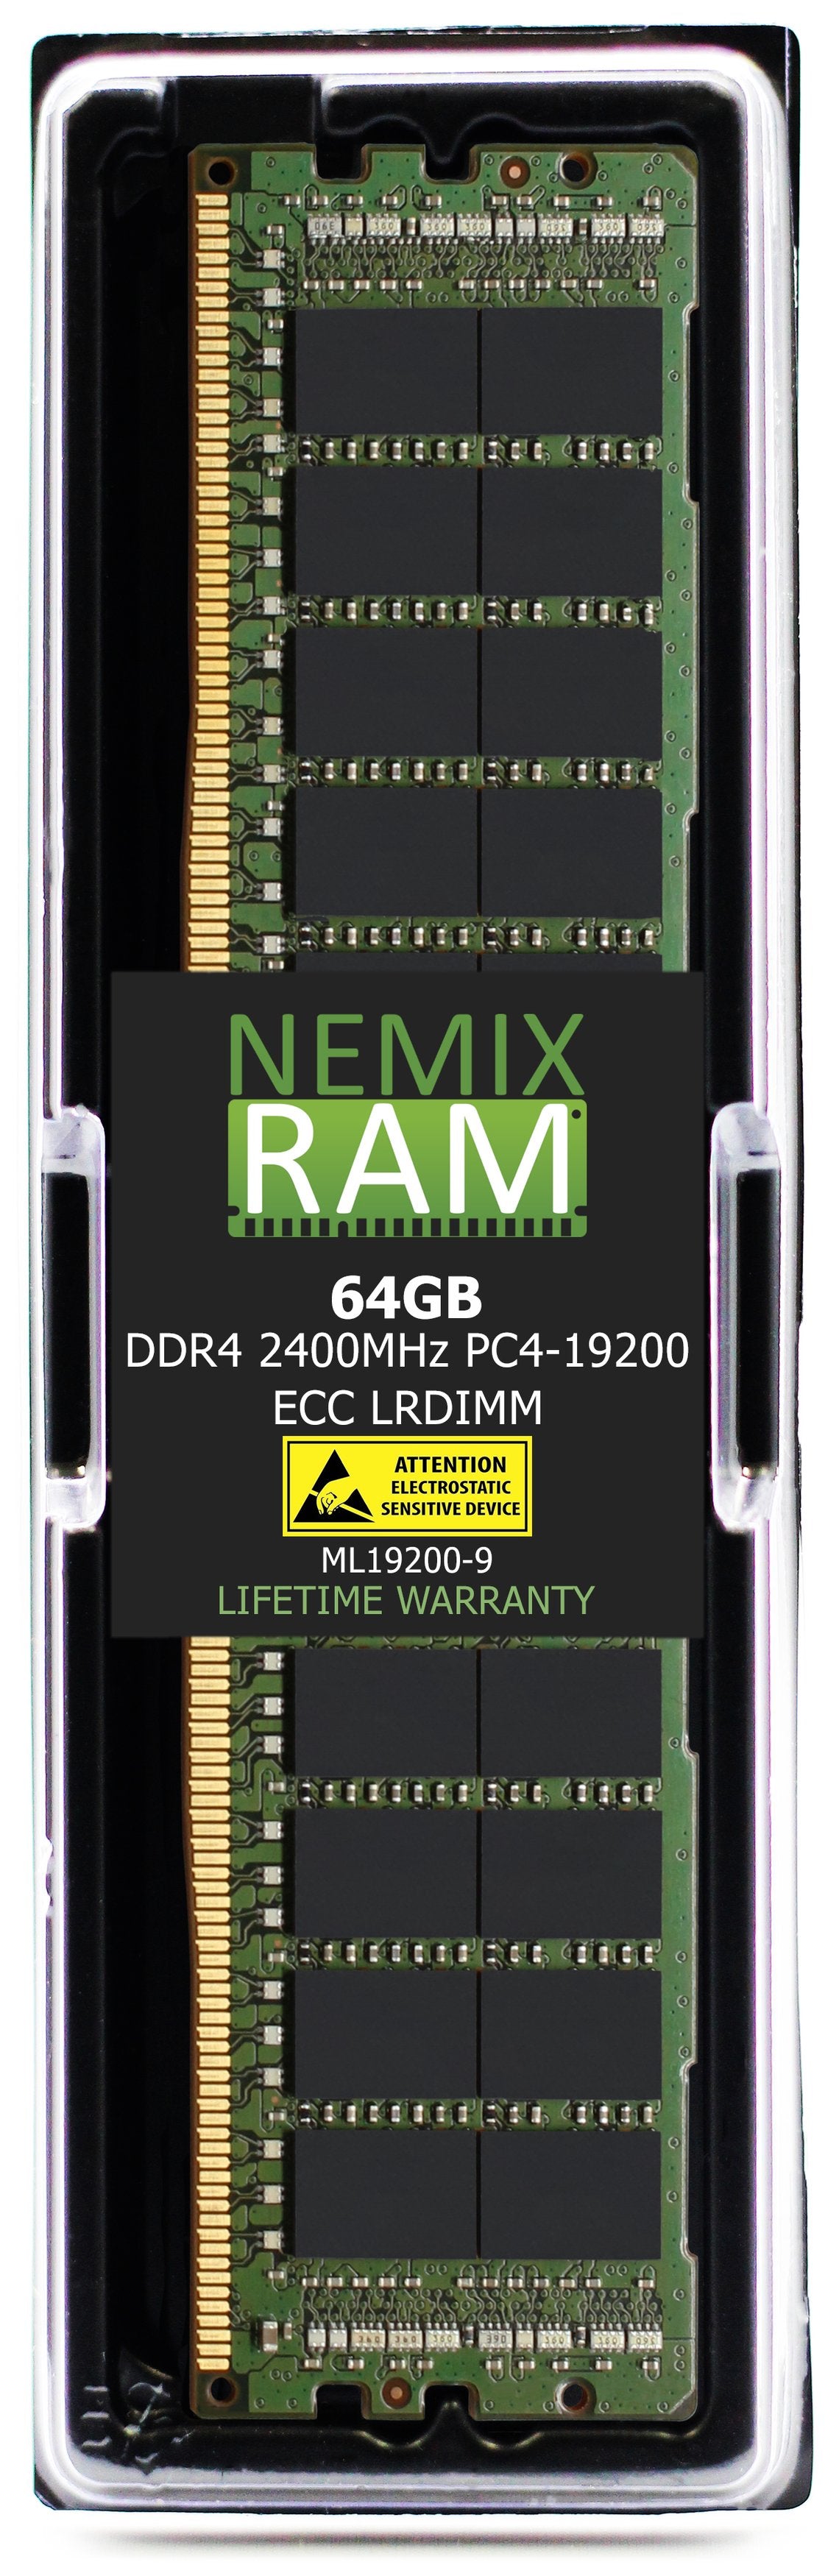 64GB DDR4 2400MHZ PC4-19200 LRDIMM Compatible with Supermicro MEM-DR464L-CL02-LR24